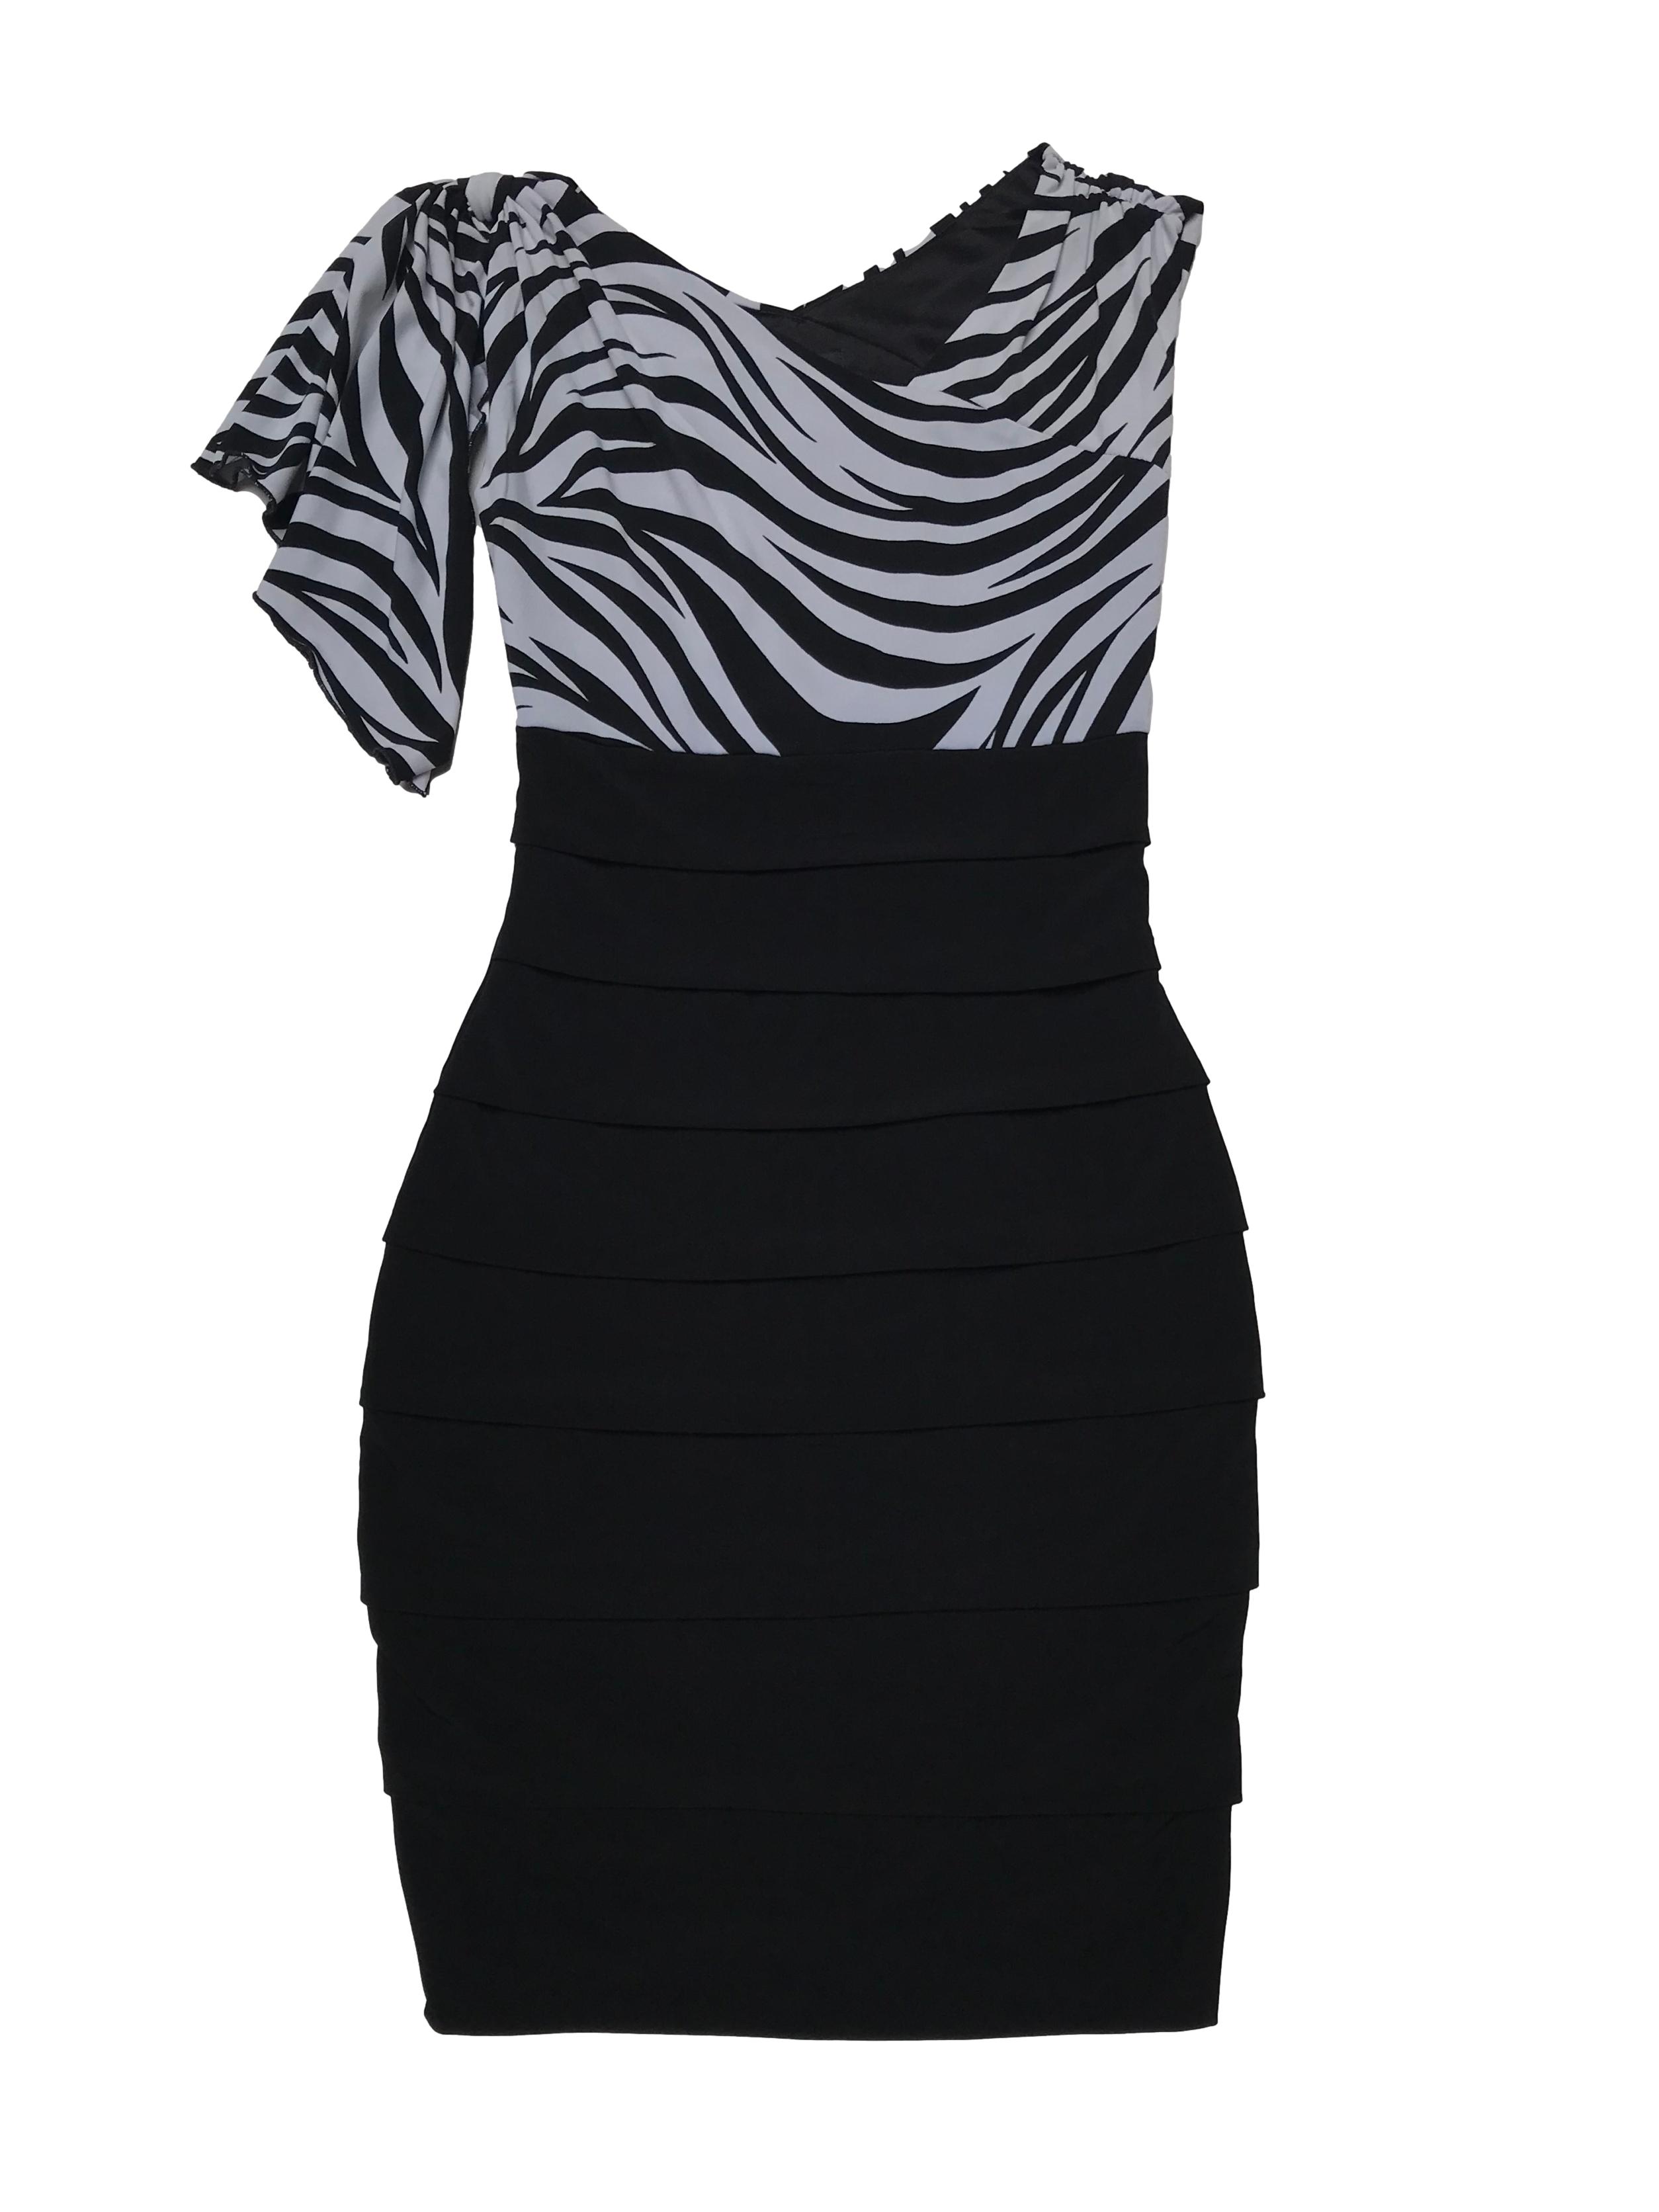 Vestido Enfocus Studio de tela stretch, superior print zebra con aplicación en un hombro, falda pegada y en capas. Largo 90cm